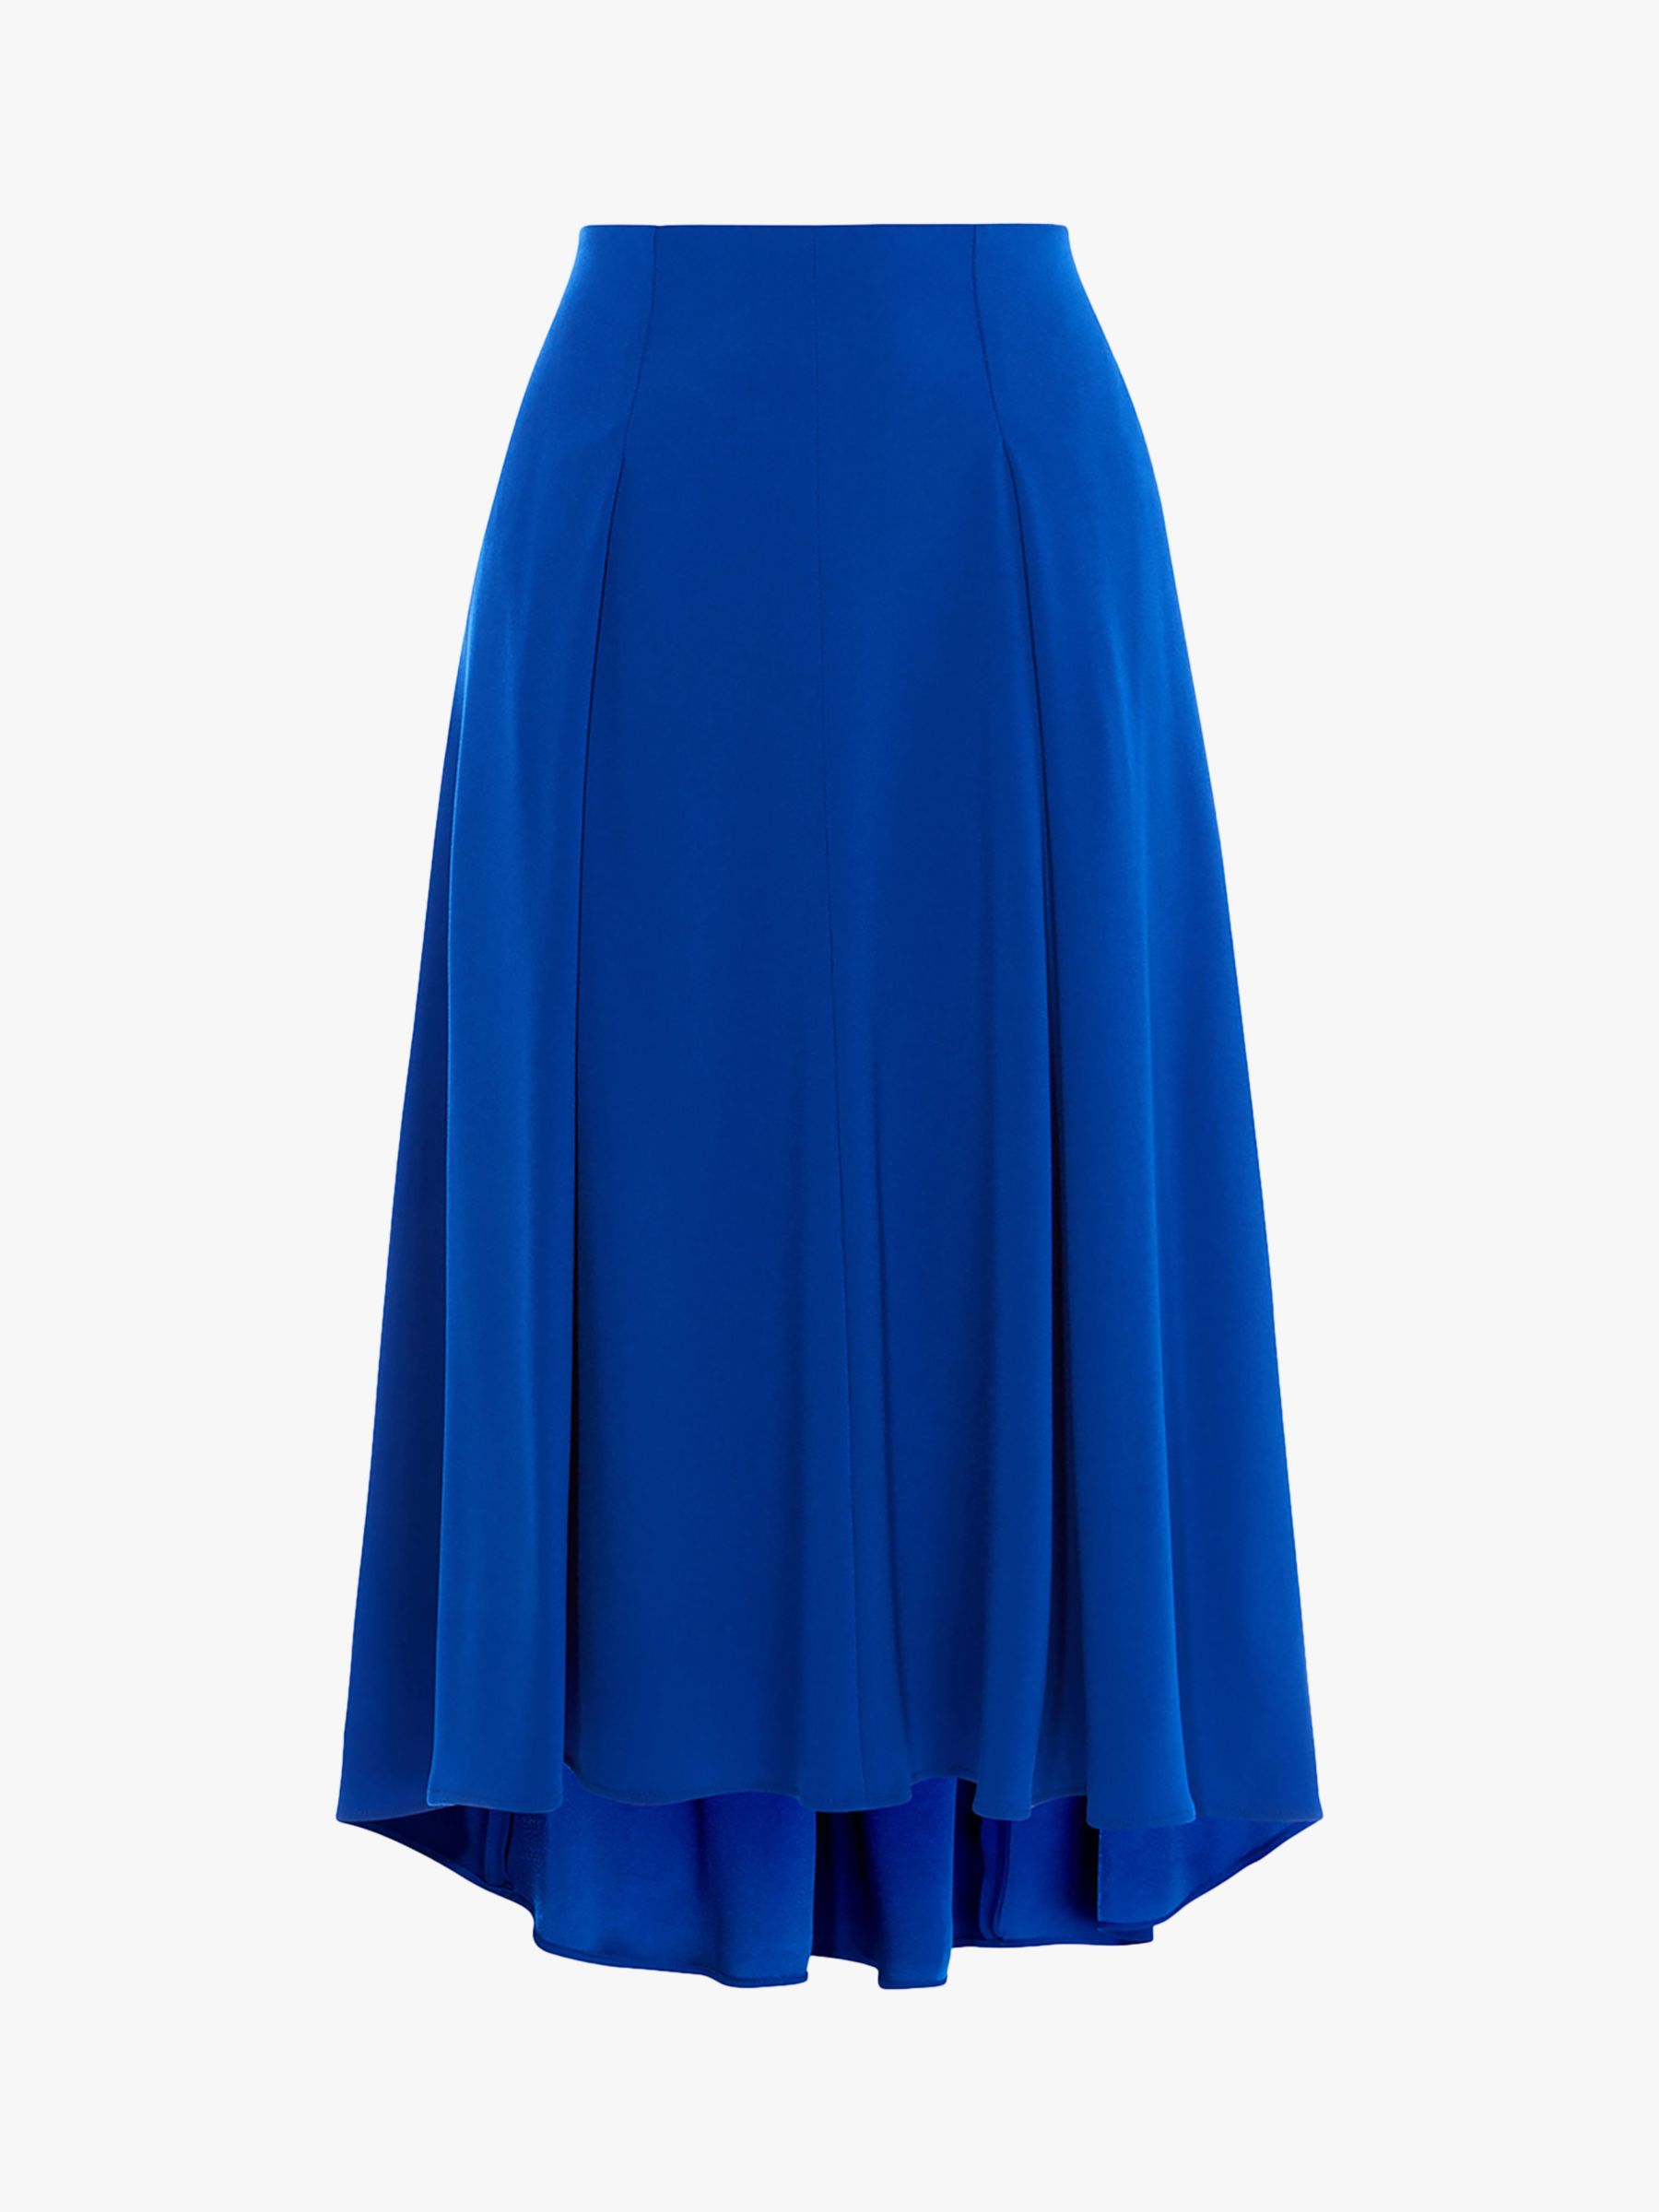 Karen Millen Soft Pleat High-Low Skirt, Blue